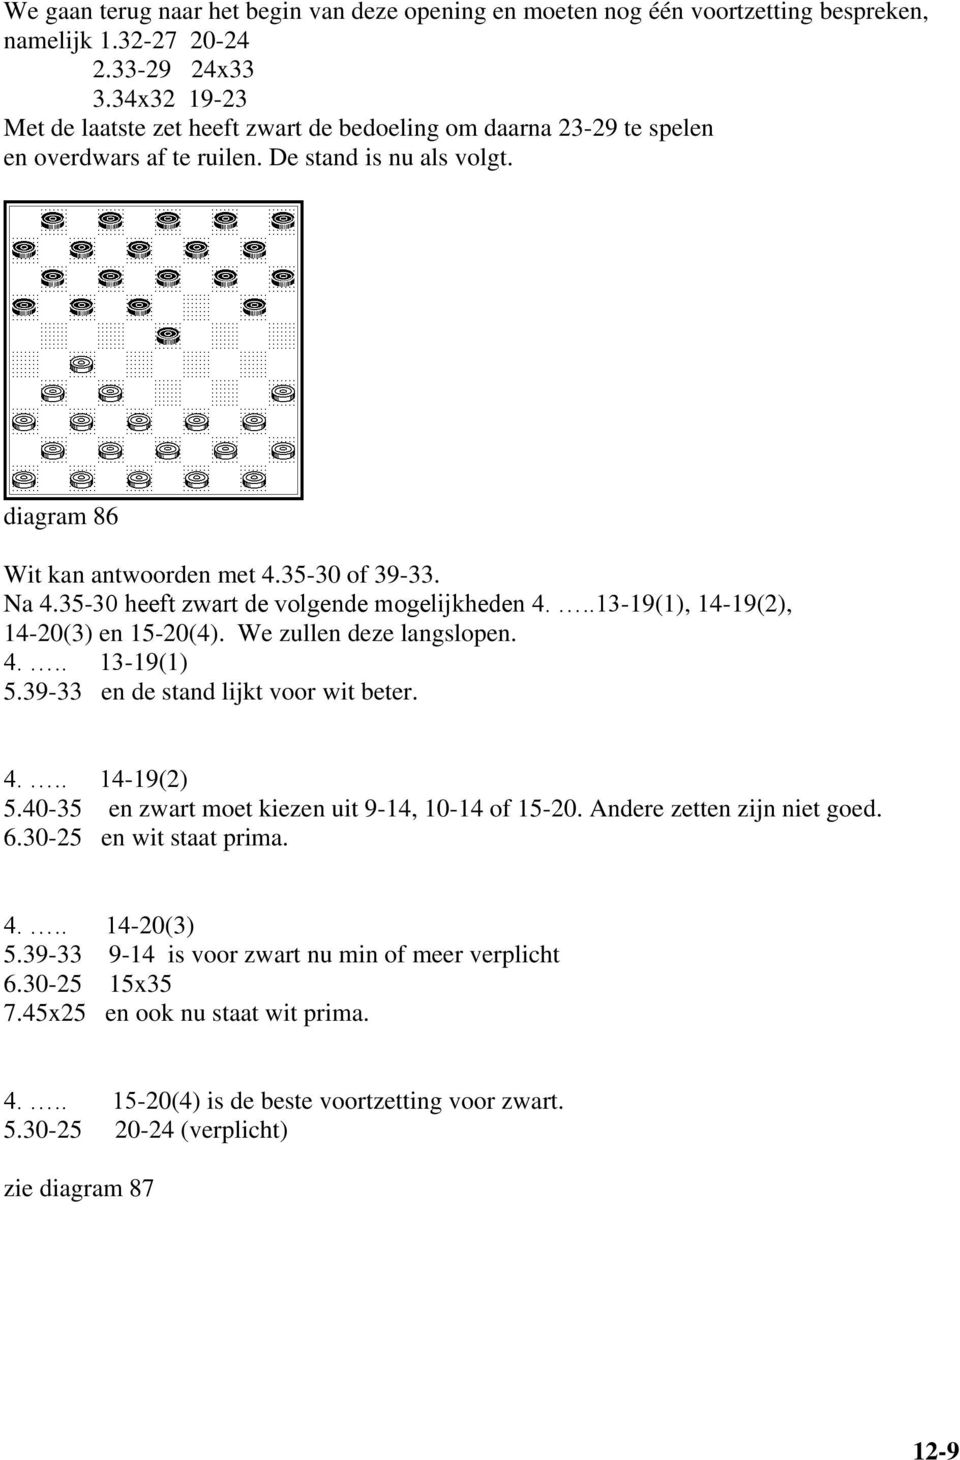 35-30 heeft zwart de volgende mogelijkheden 4...13-19(1), 14-19(2), 14-20(3) en 15-20(4). We zullen deze langslopen. 4... 13-19(1) 5.39-33 en de stand lijkt voor wit beter. 4... 14-19(2) 5.